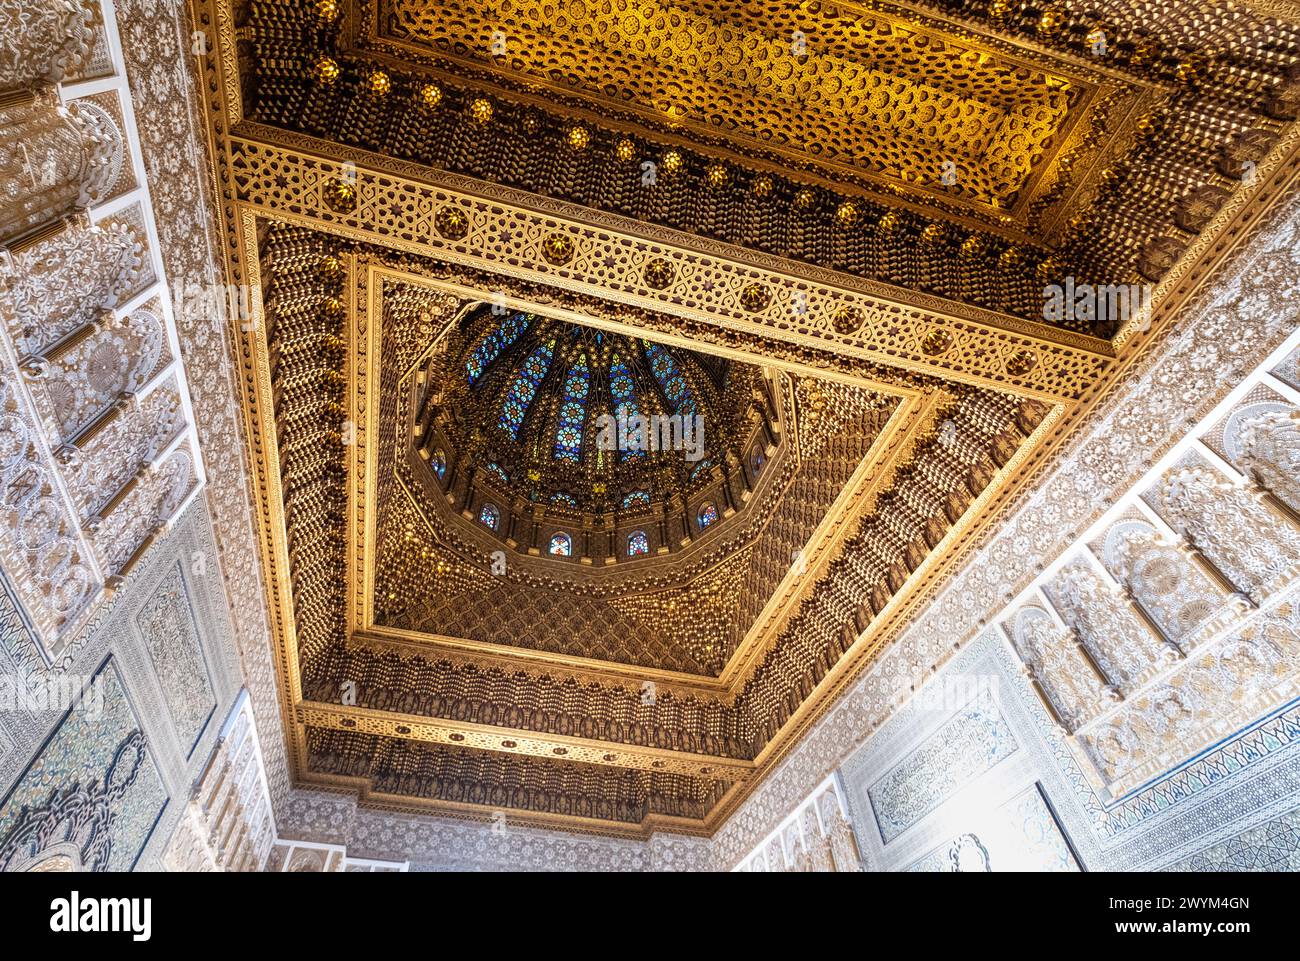 Plafond du Mausolée royal de Mohammed V à Rabat, la capitale du Maroc. Il dispose de riches et belles décorations arabesque en marbre blanc, w Banque D'Images